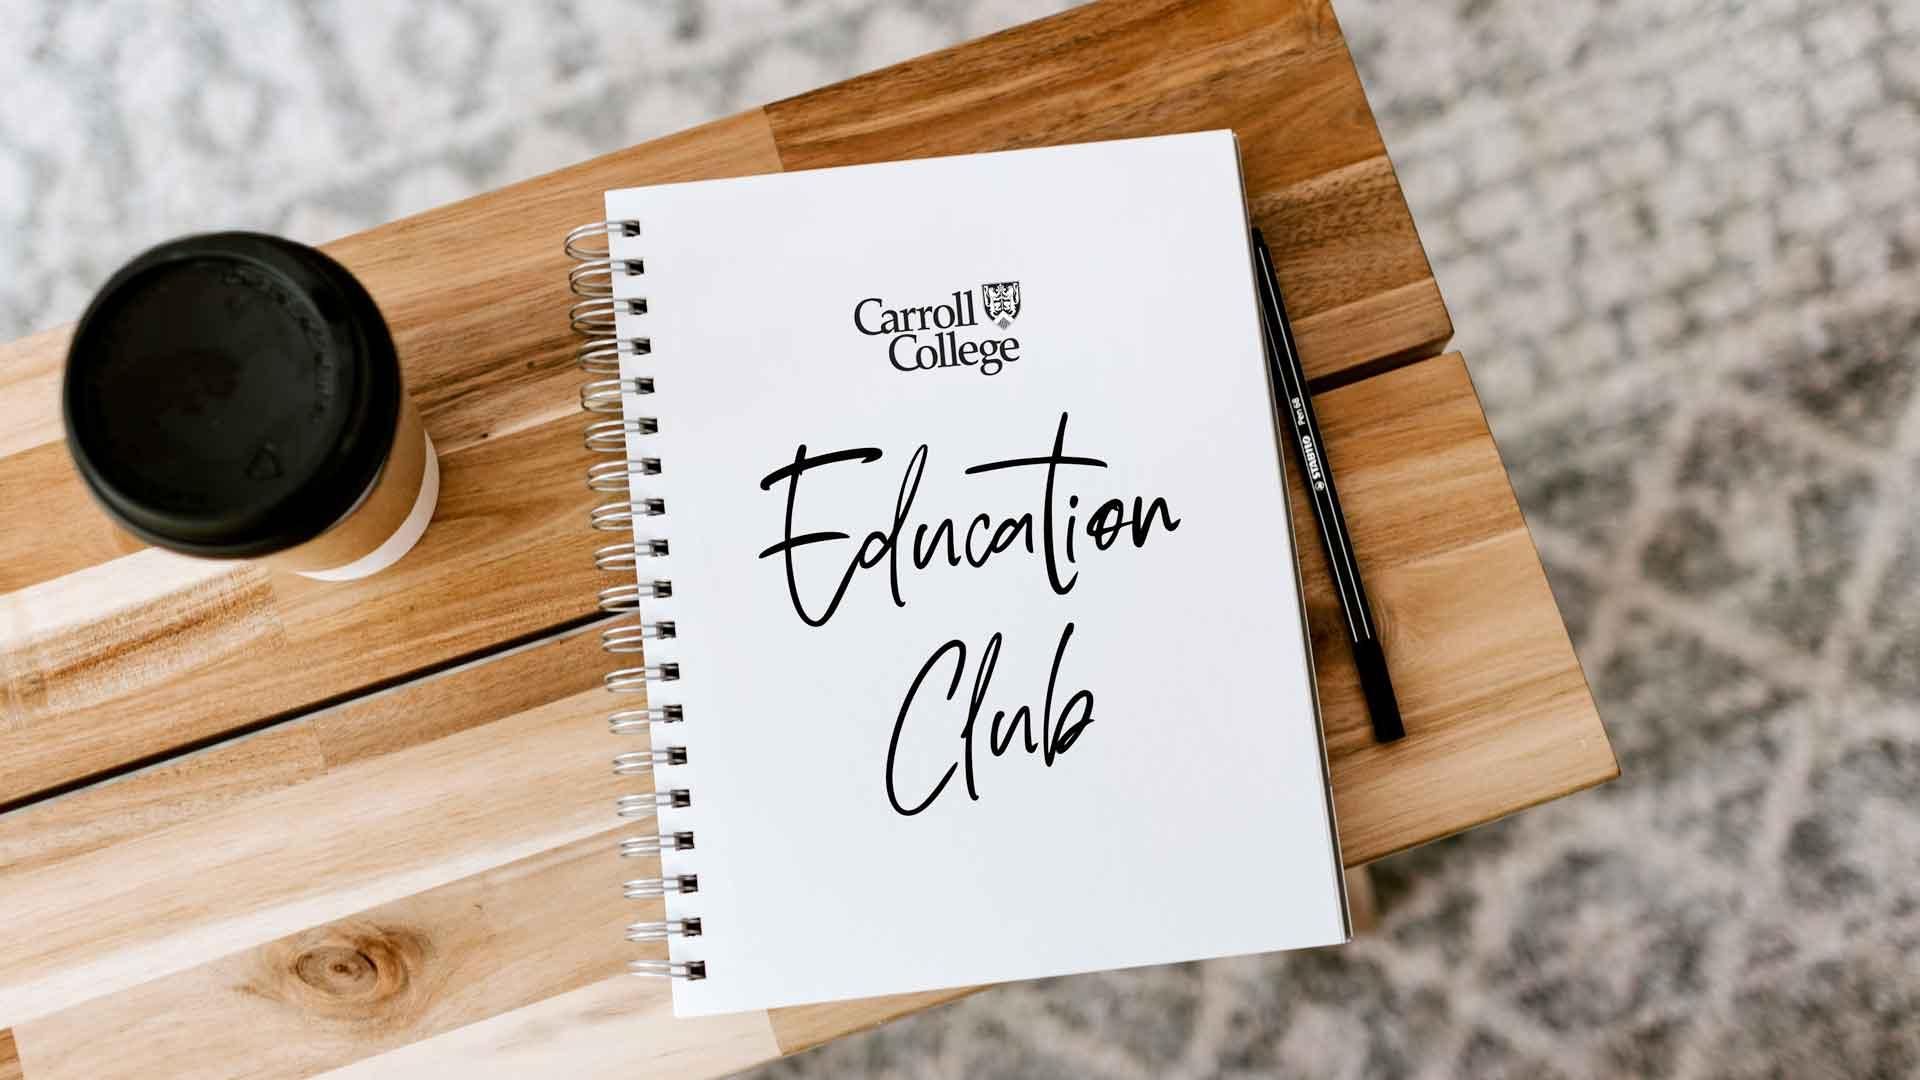 Education Club